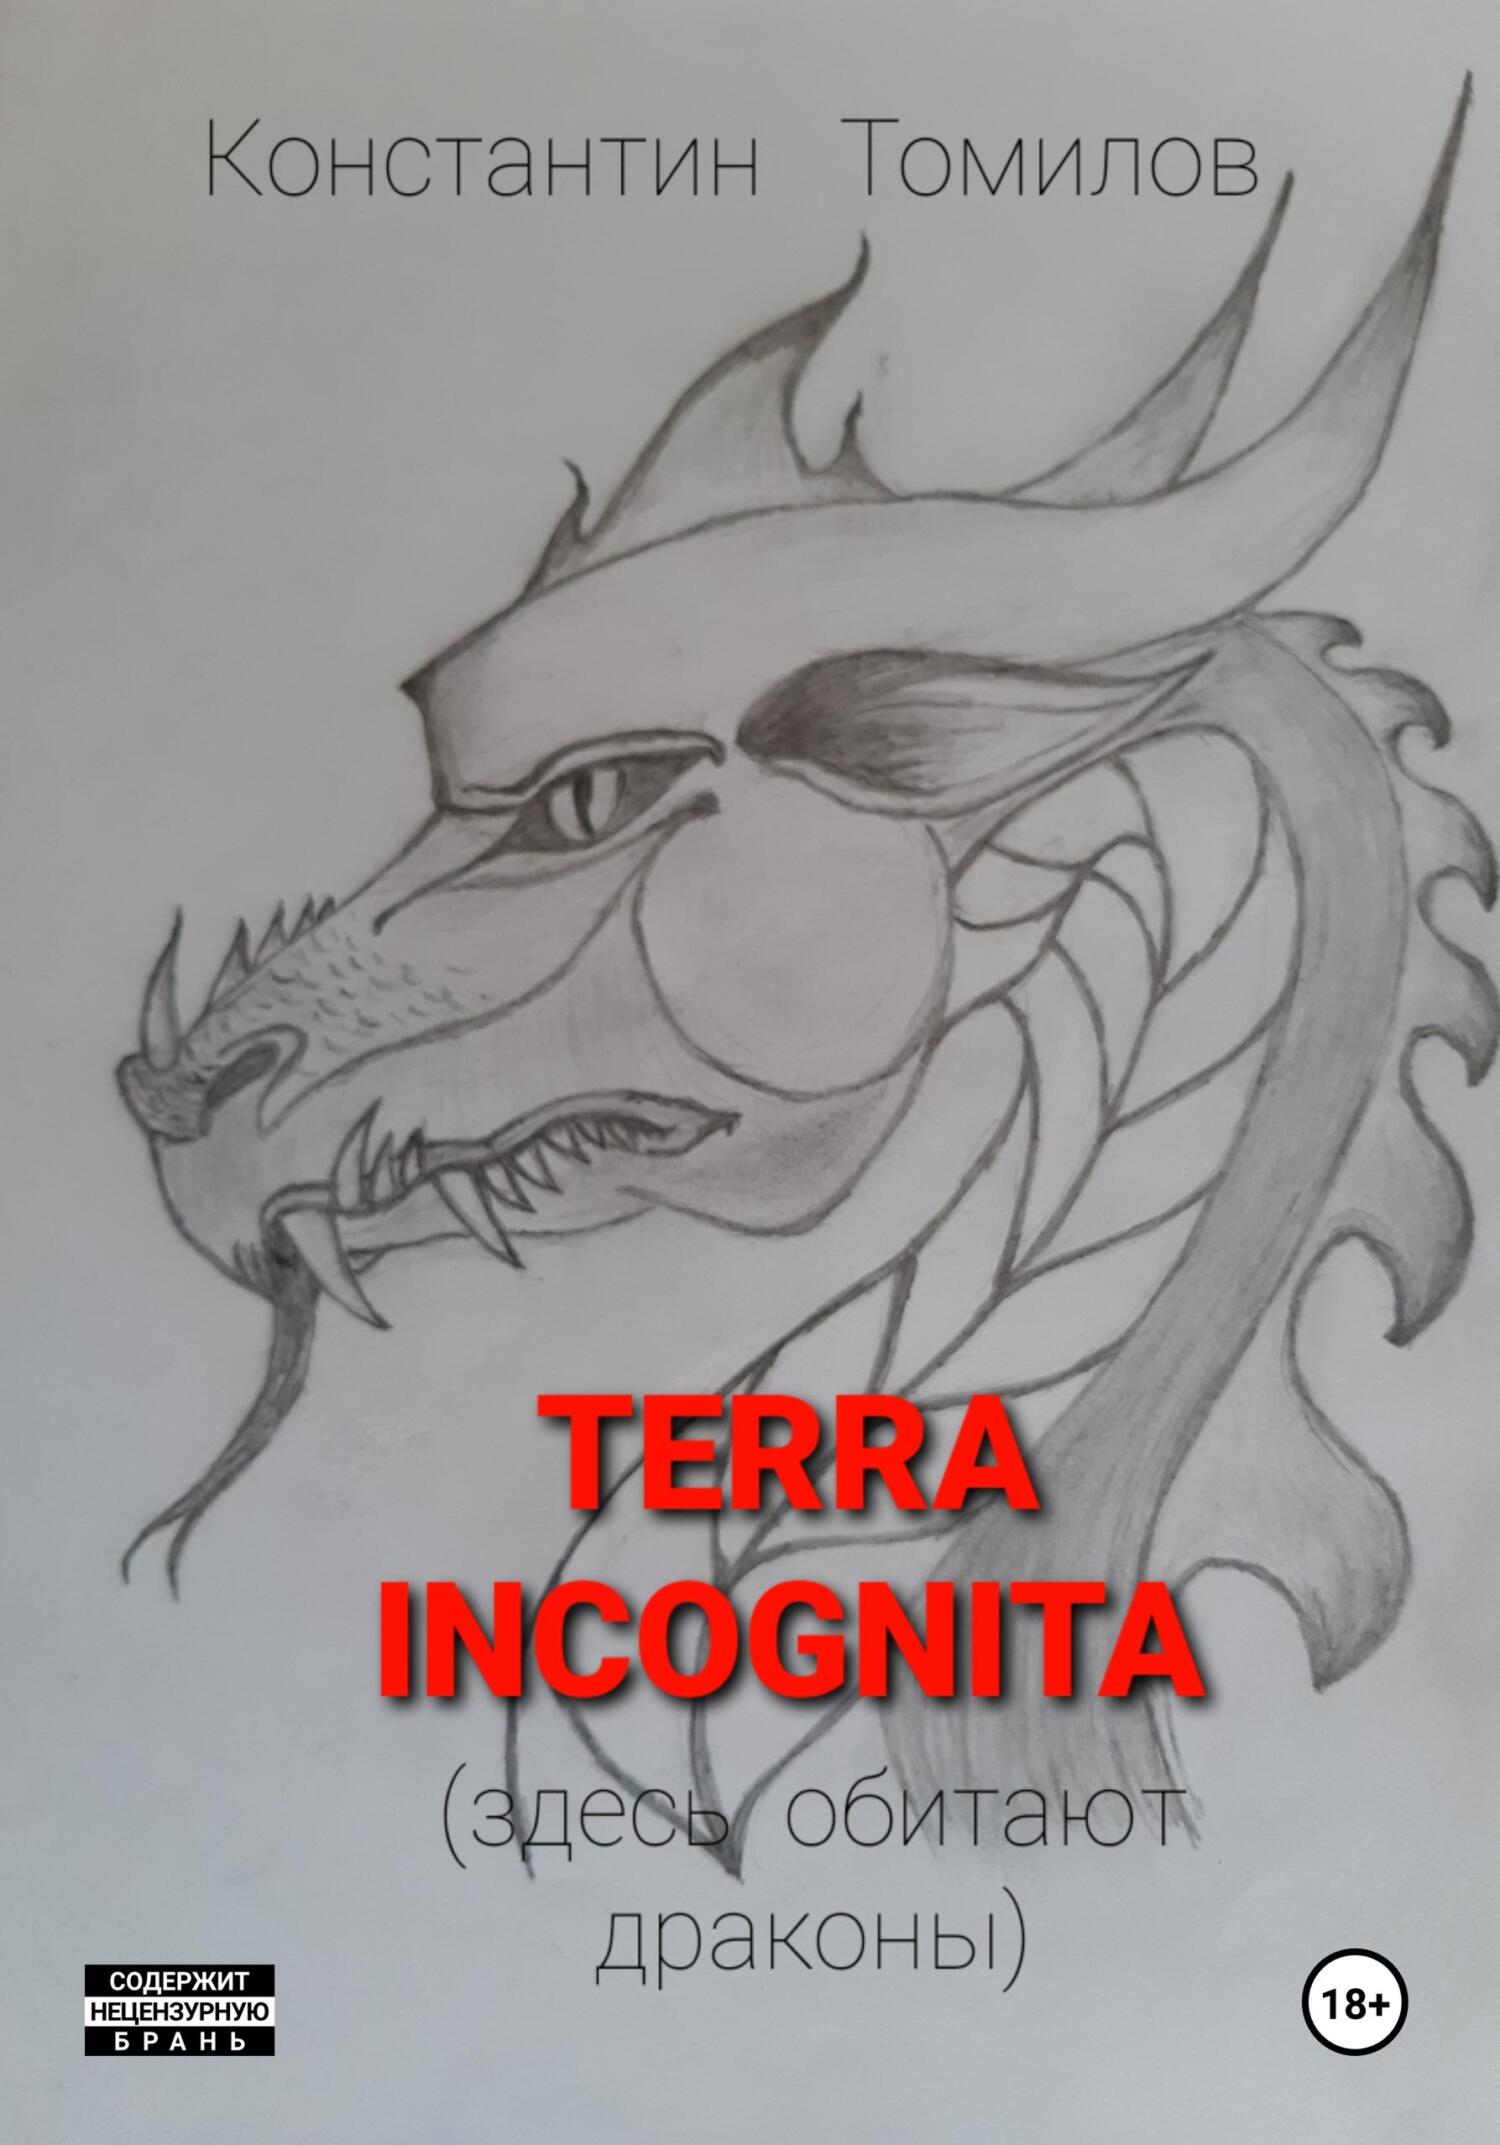 Terra incognita (здесь обитают драконы) - Константин Томилов